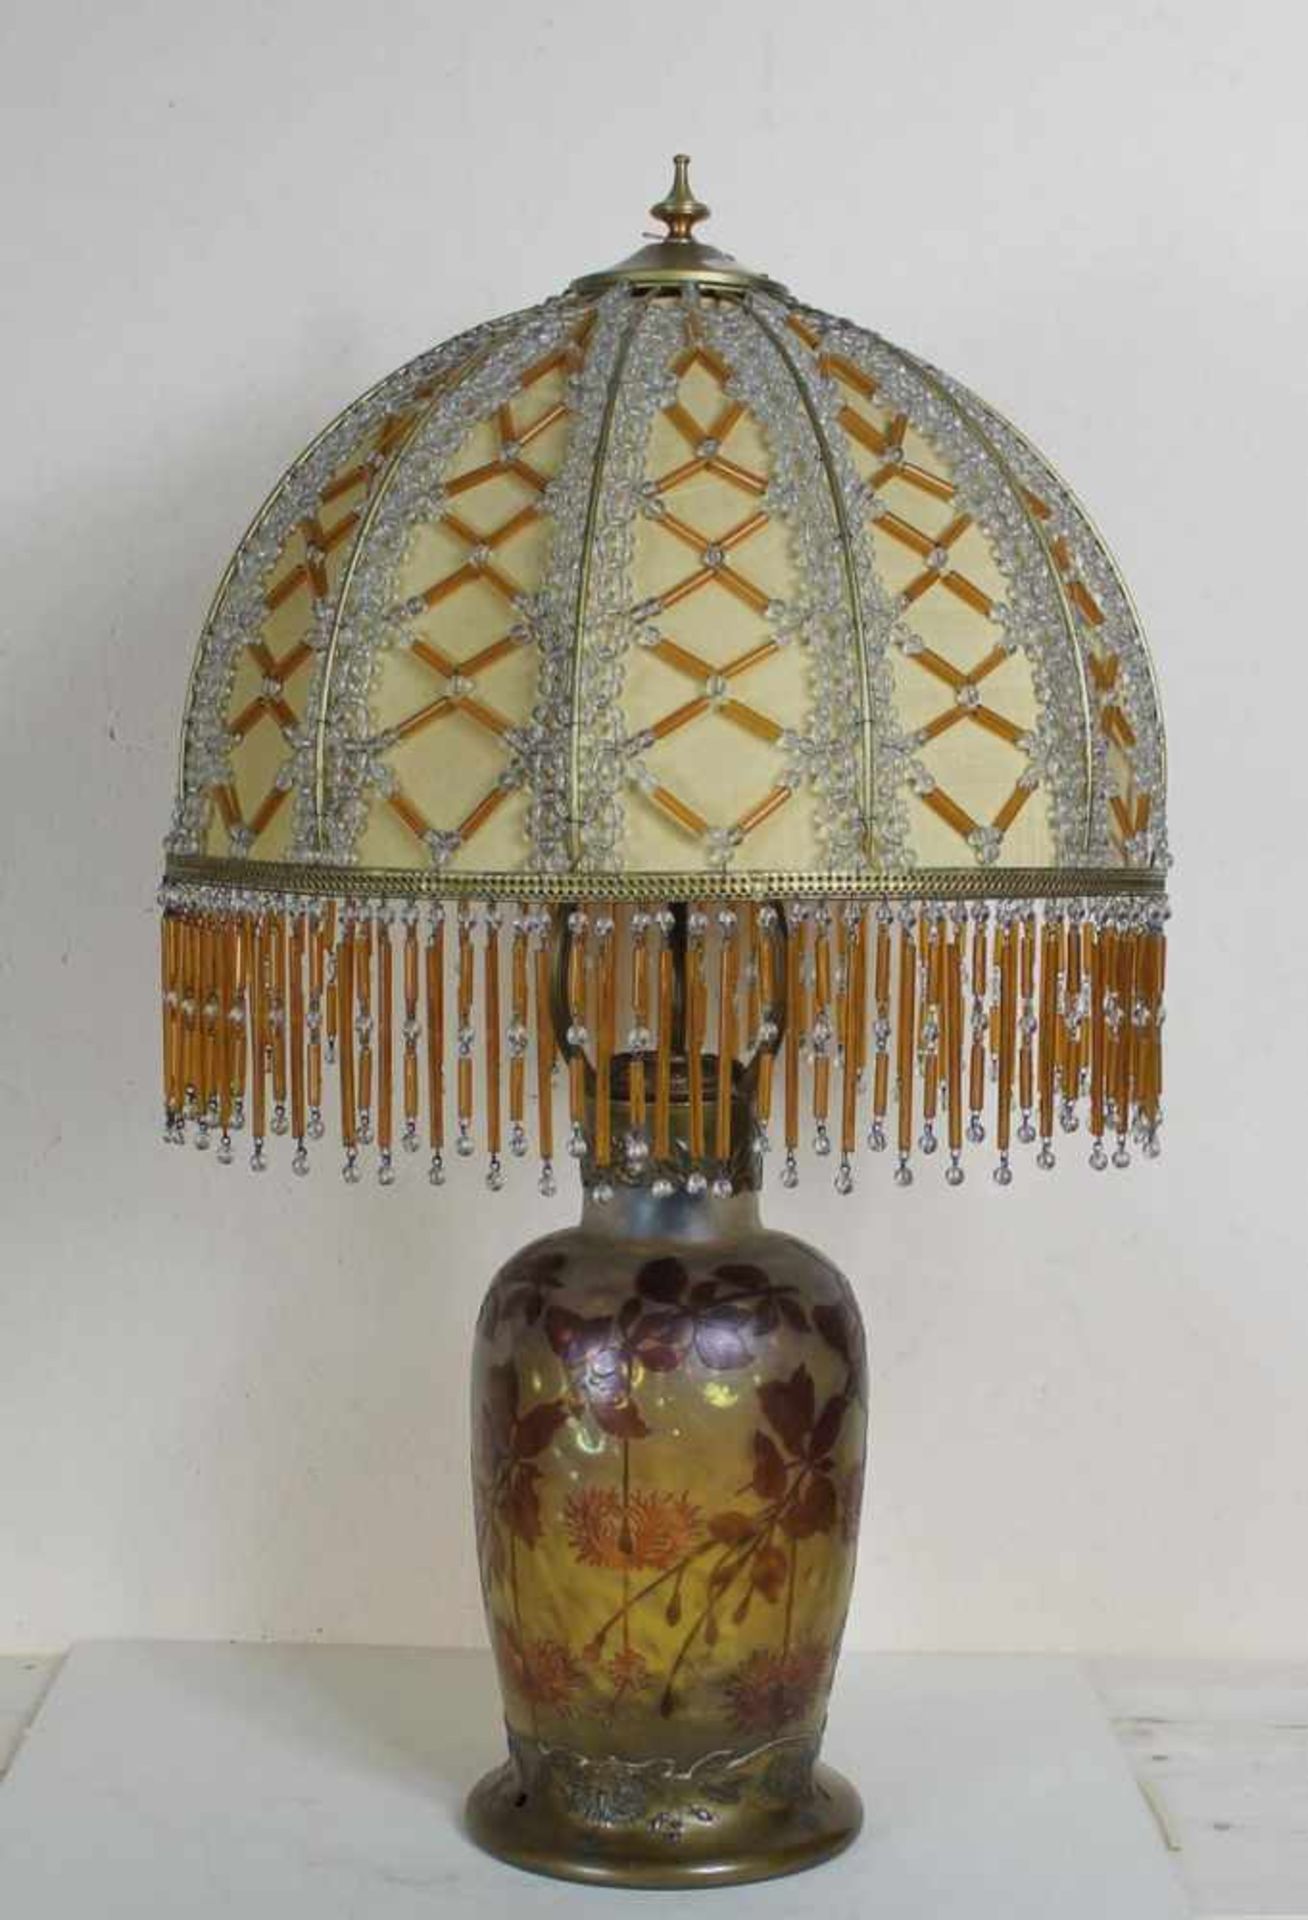 Jugendstil Tischlampe Cristallerie den Pantin Frankreich um 1910, Klarglaskorpus mit rötlichen